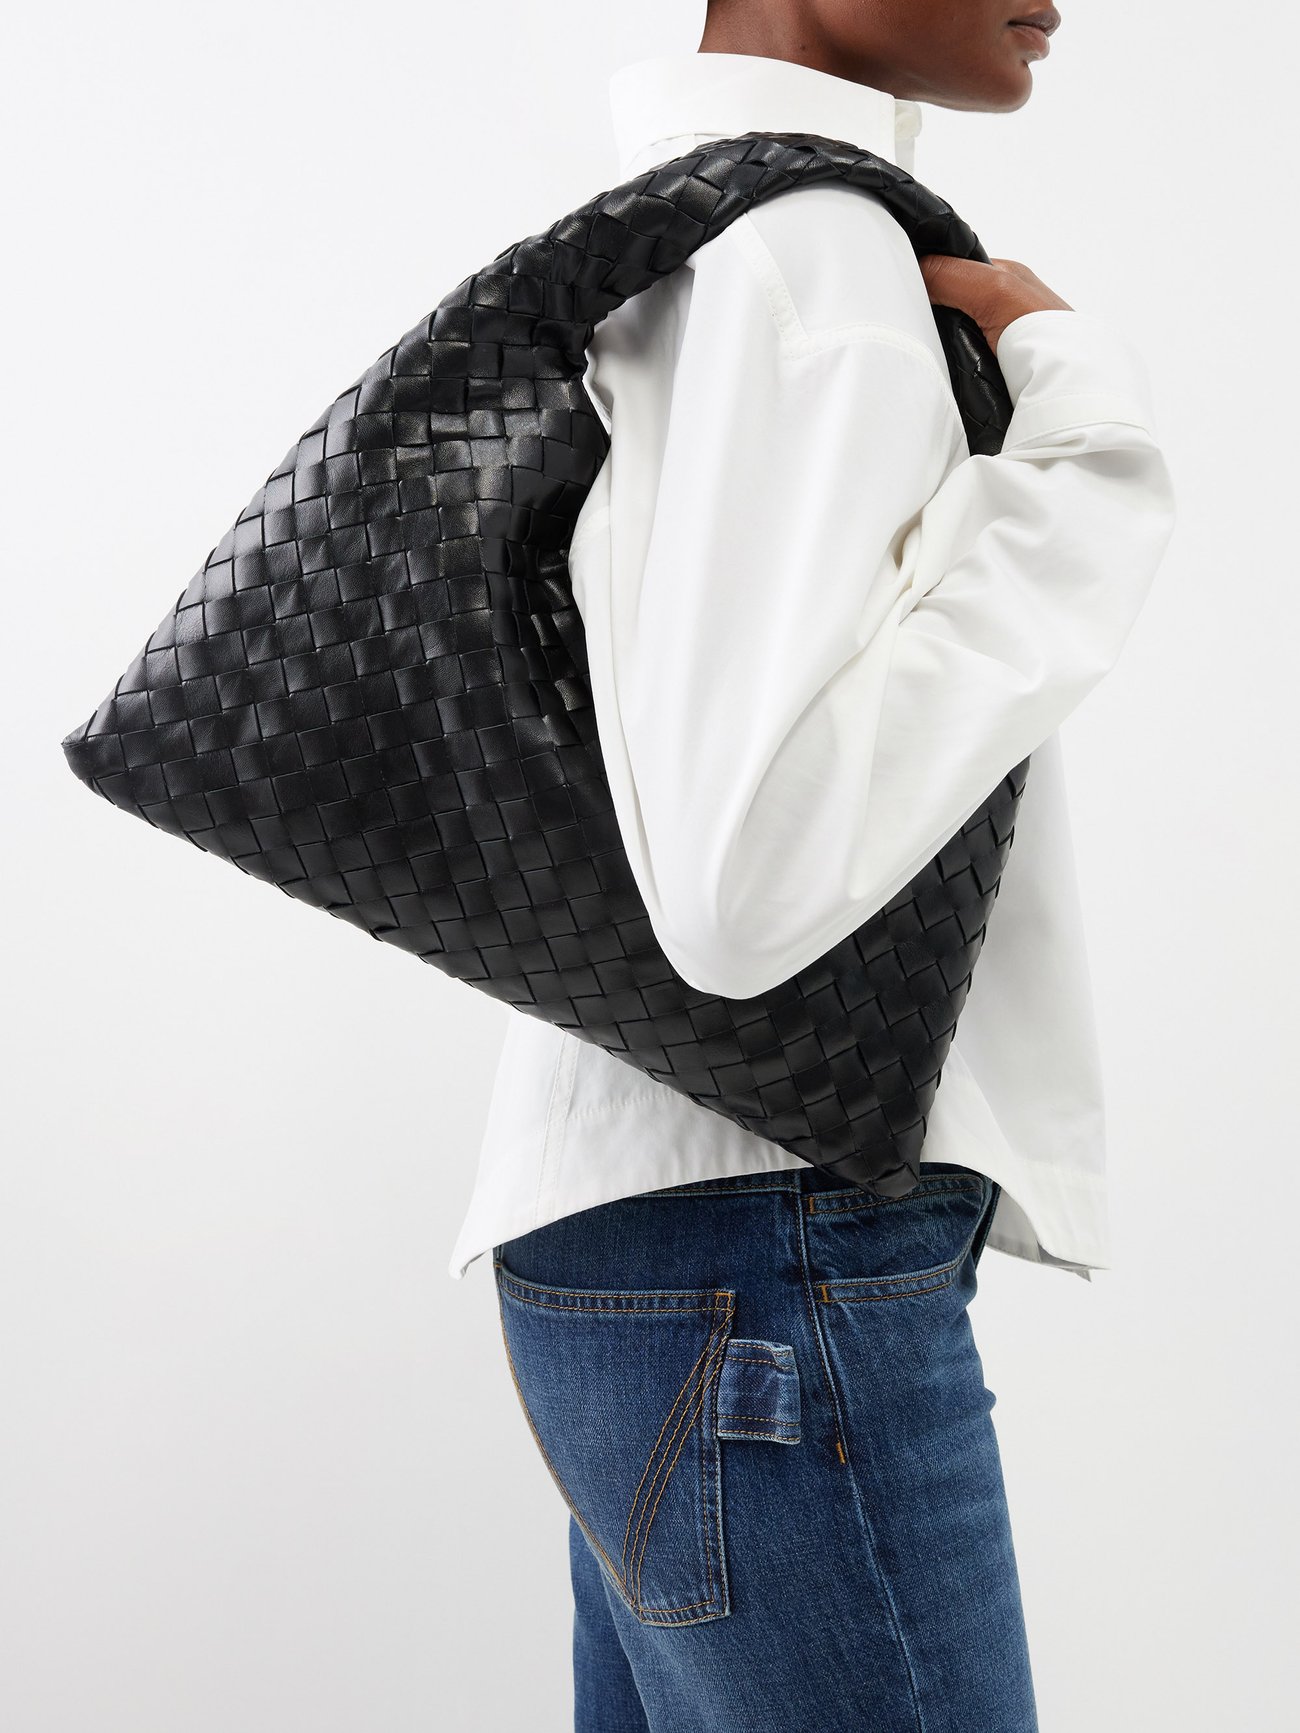 Bottega Veneta Shopping Bag in Black Intrecciato Leather